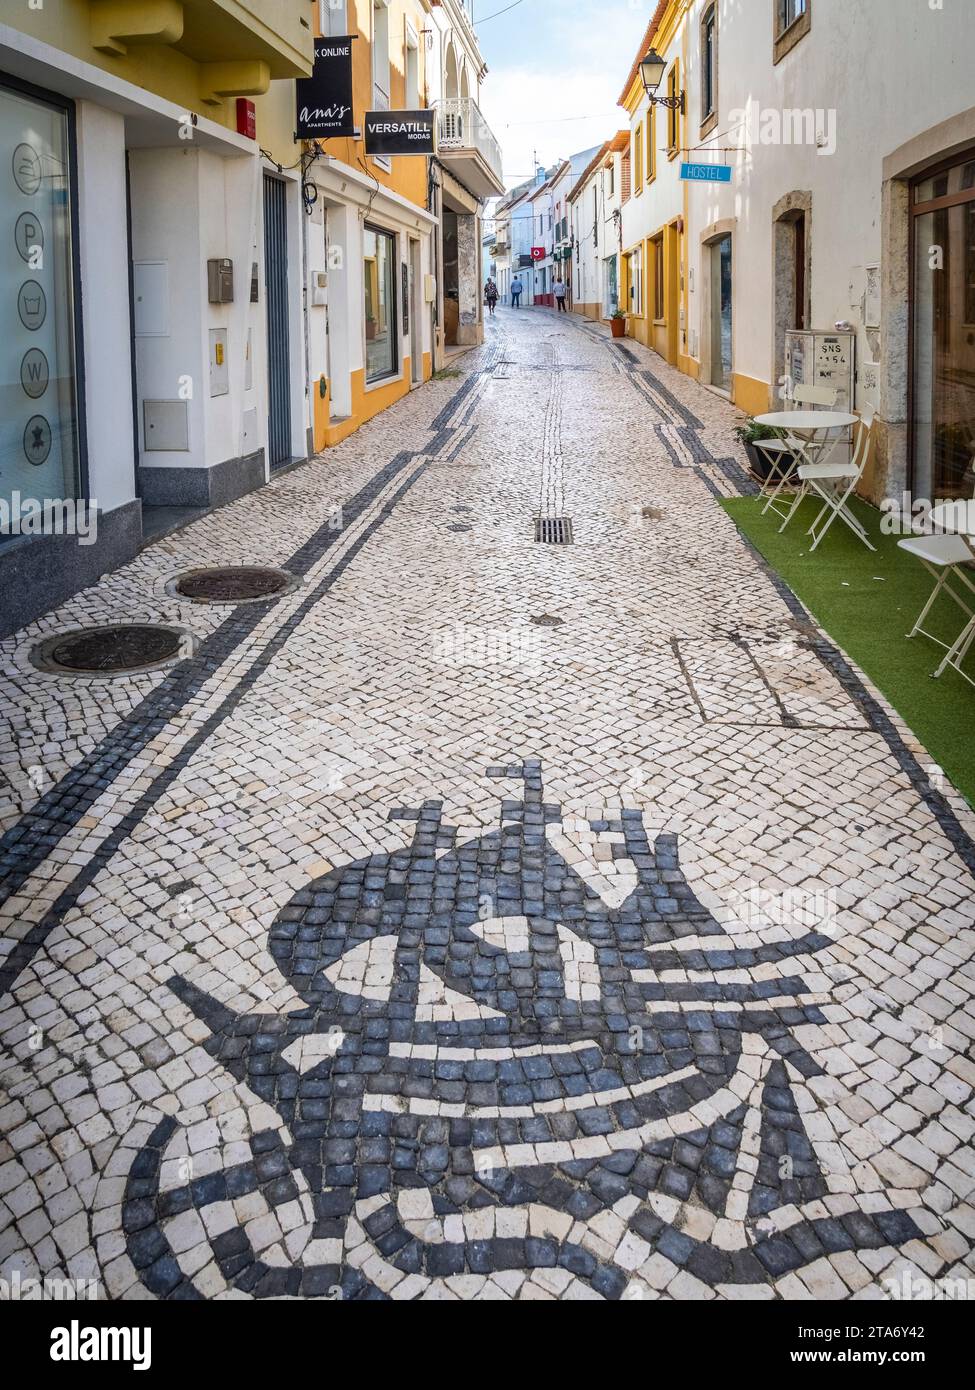 Rue tuile portugaise dans la partie ancienne de la ville de Sines dans la région Costa Azul au Portugal Banque D'Images